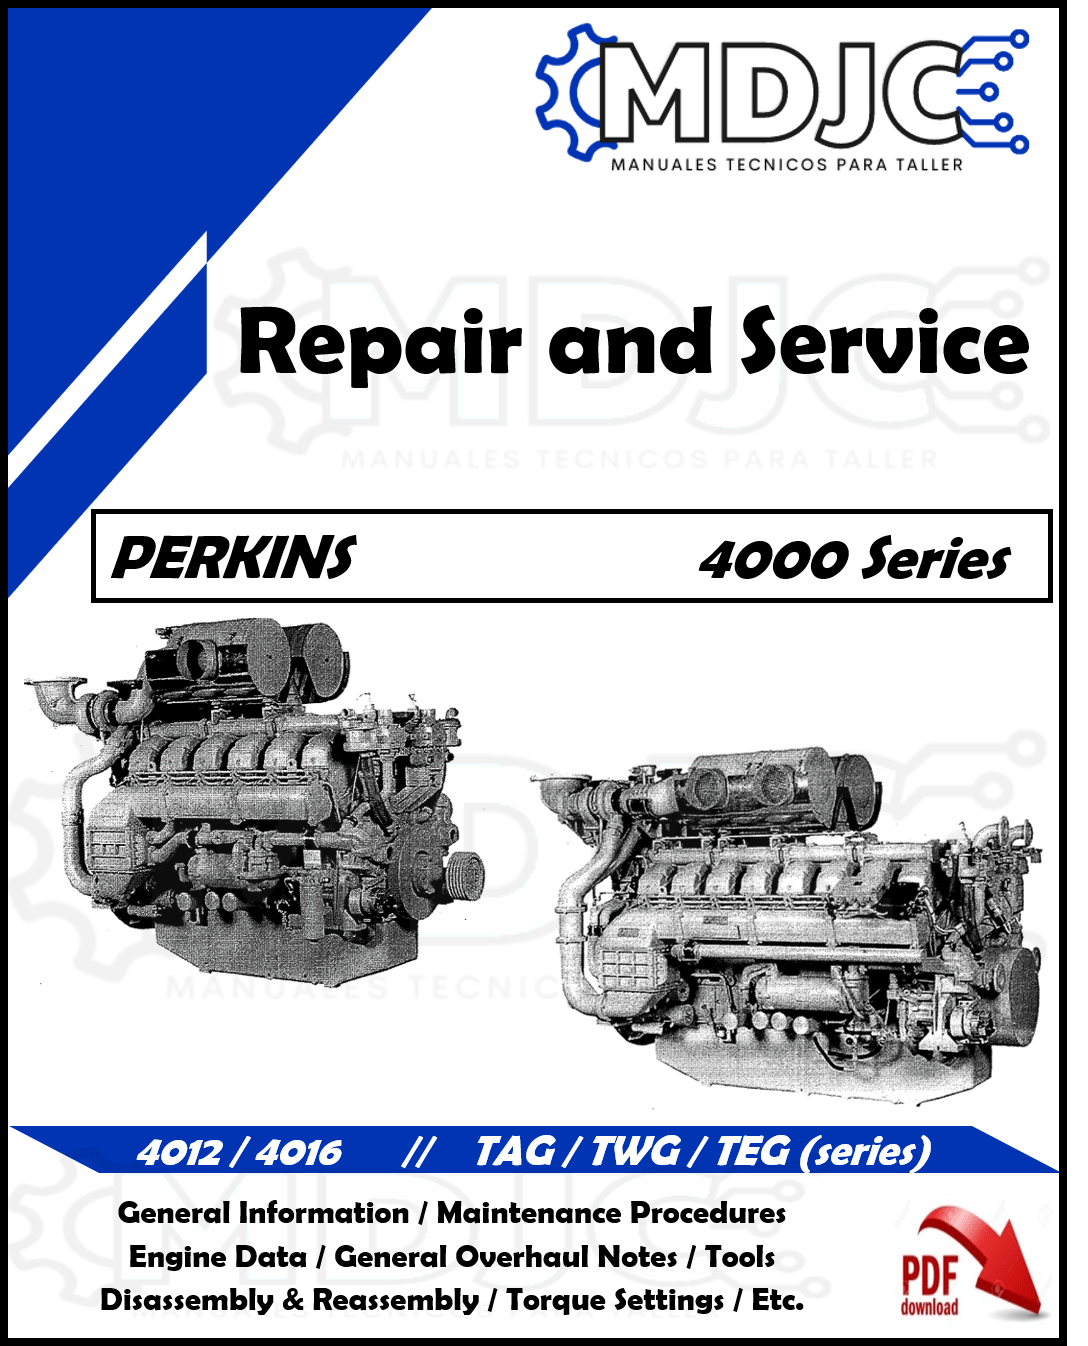 Manual de Taller (Reparación y Servicio) Motor Perkins 4000 series (4012 / 4016) TAG / TWG / TEG